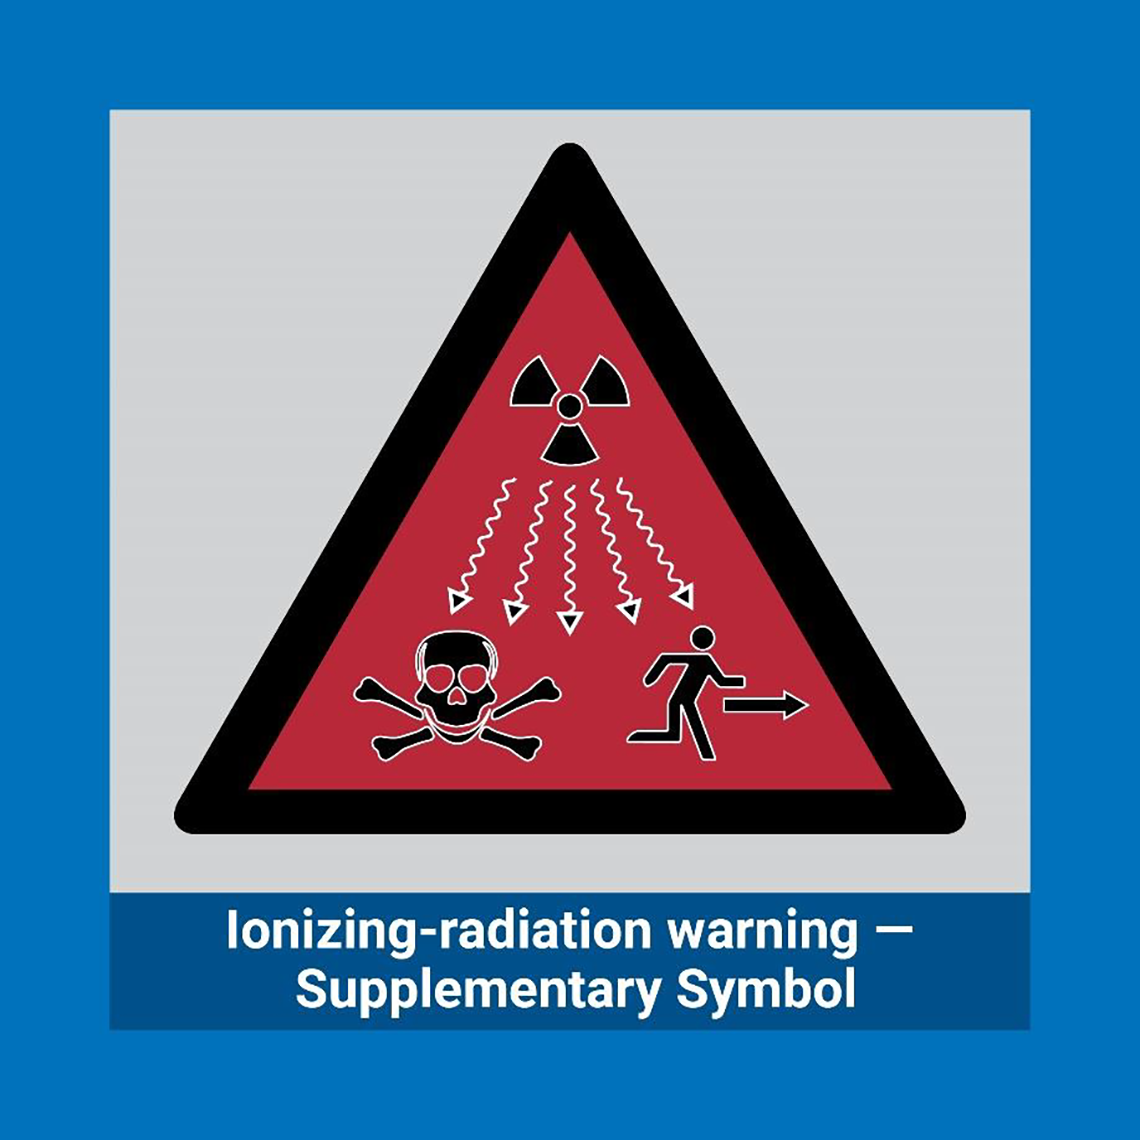 The ionizing radiation warning supplementary symbol